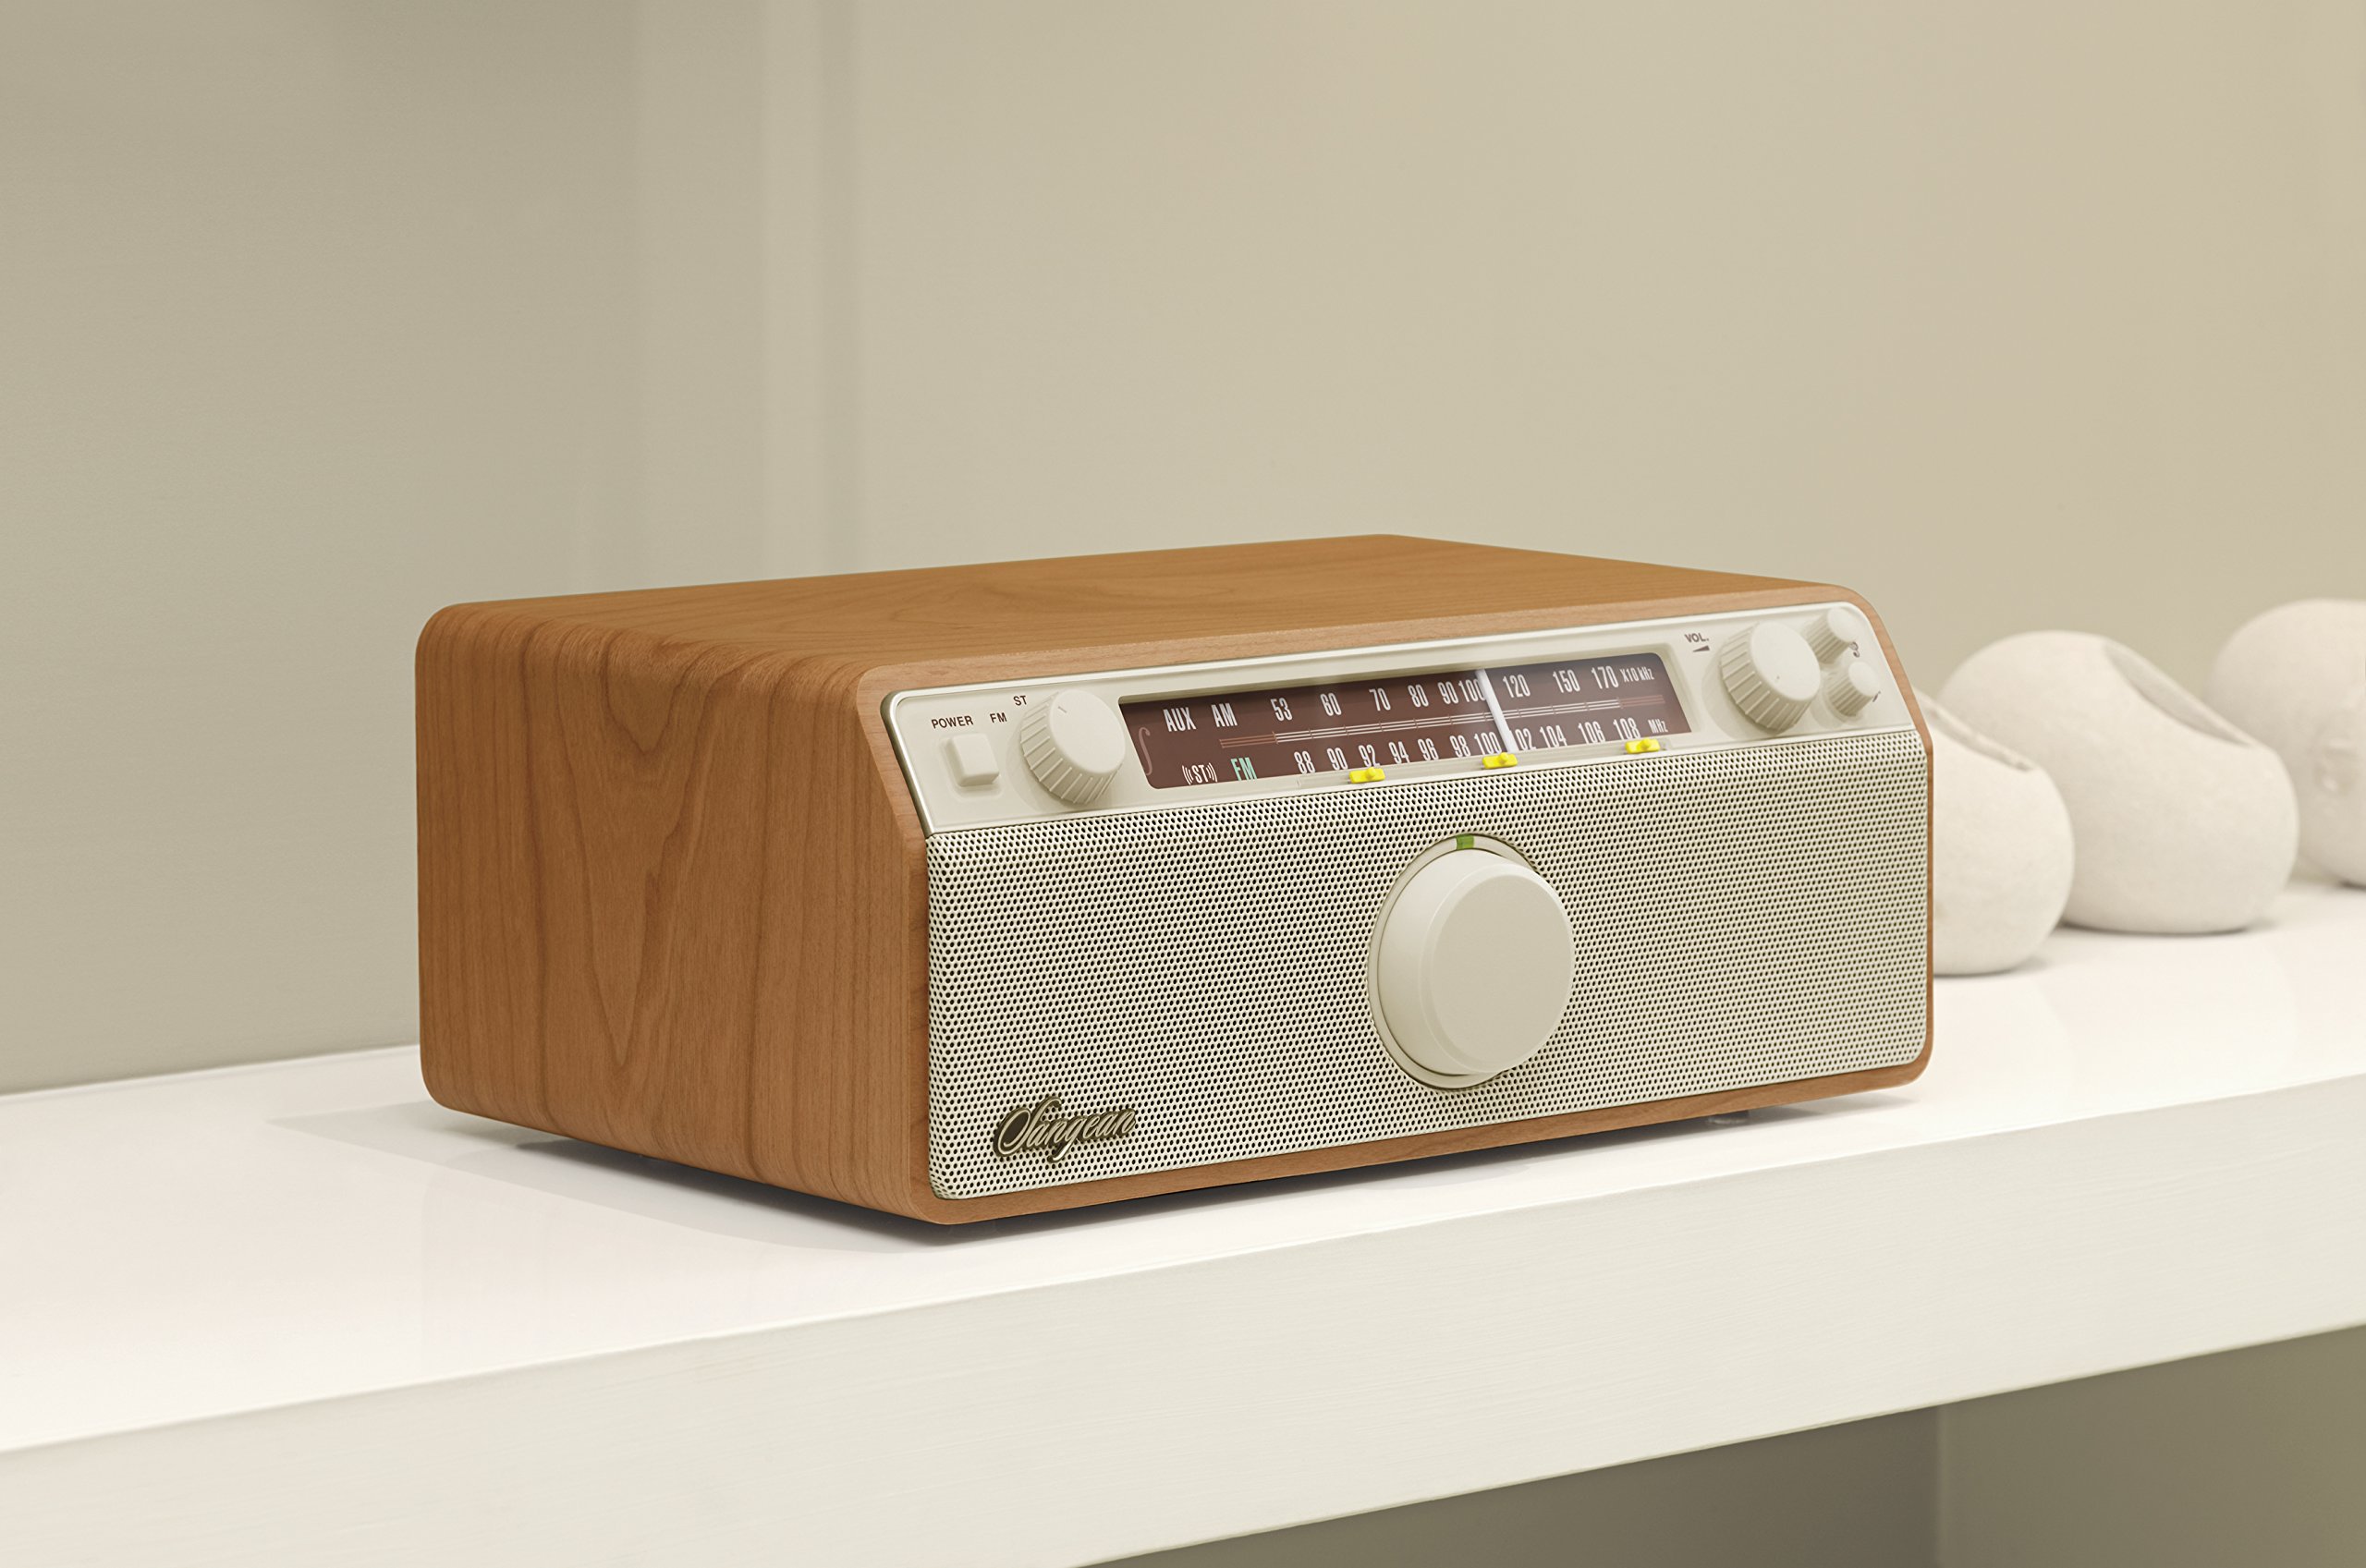 Sangean WR-12 AM/FM/Aux-In Stereo Analog Wooden Cabinet Radio (Walnut)